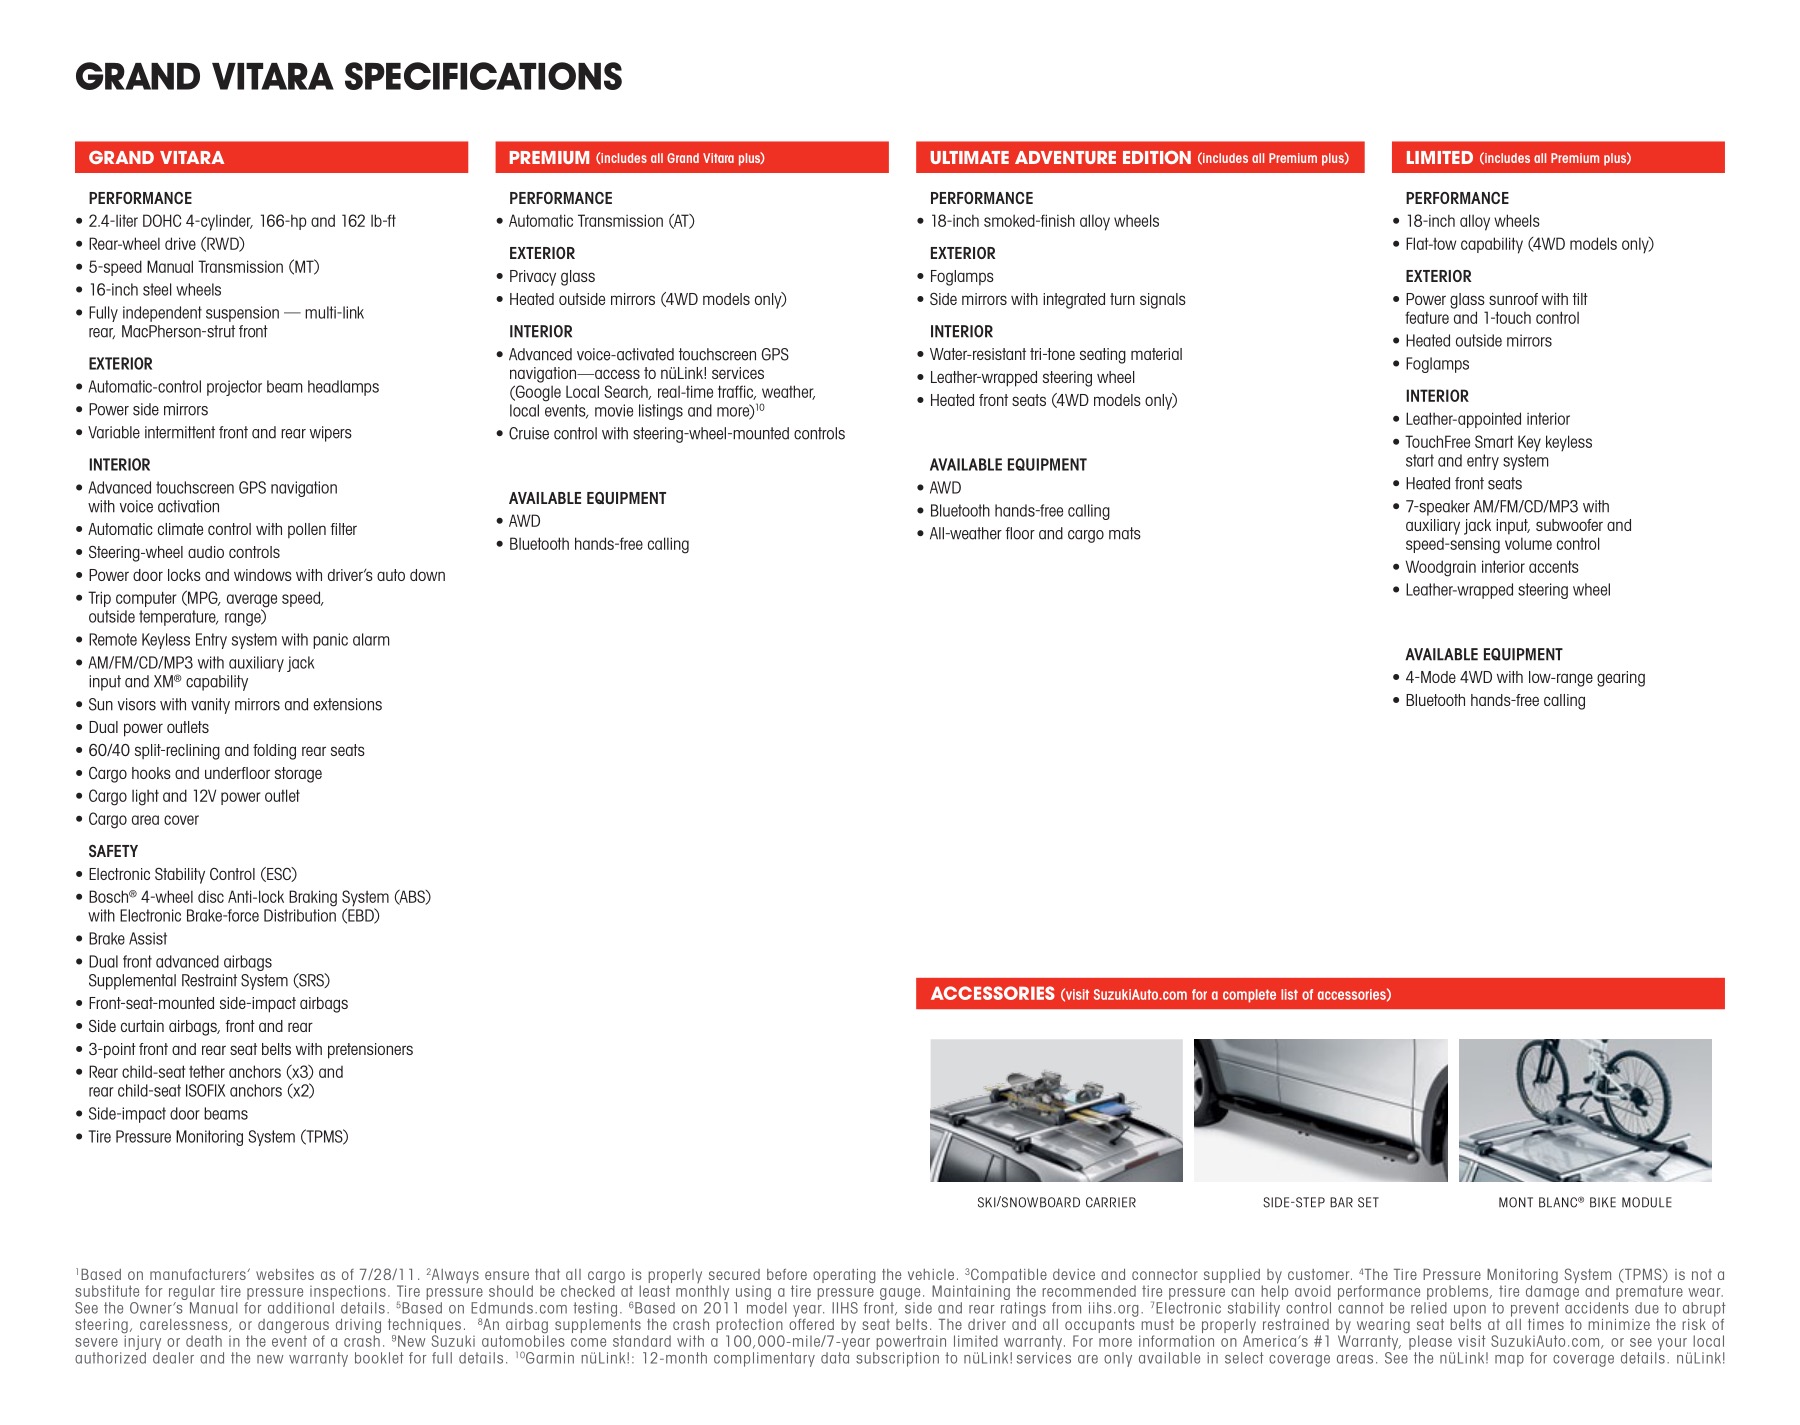 2012 Suzuki Grand Vitara Brochure Page 23